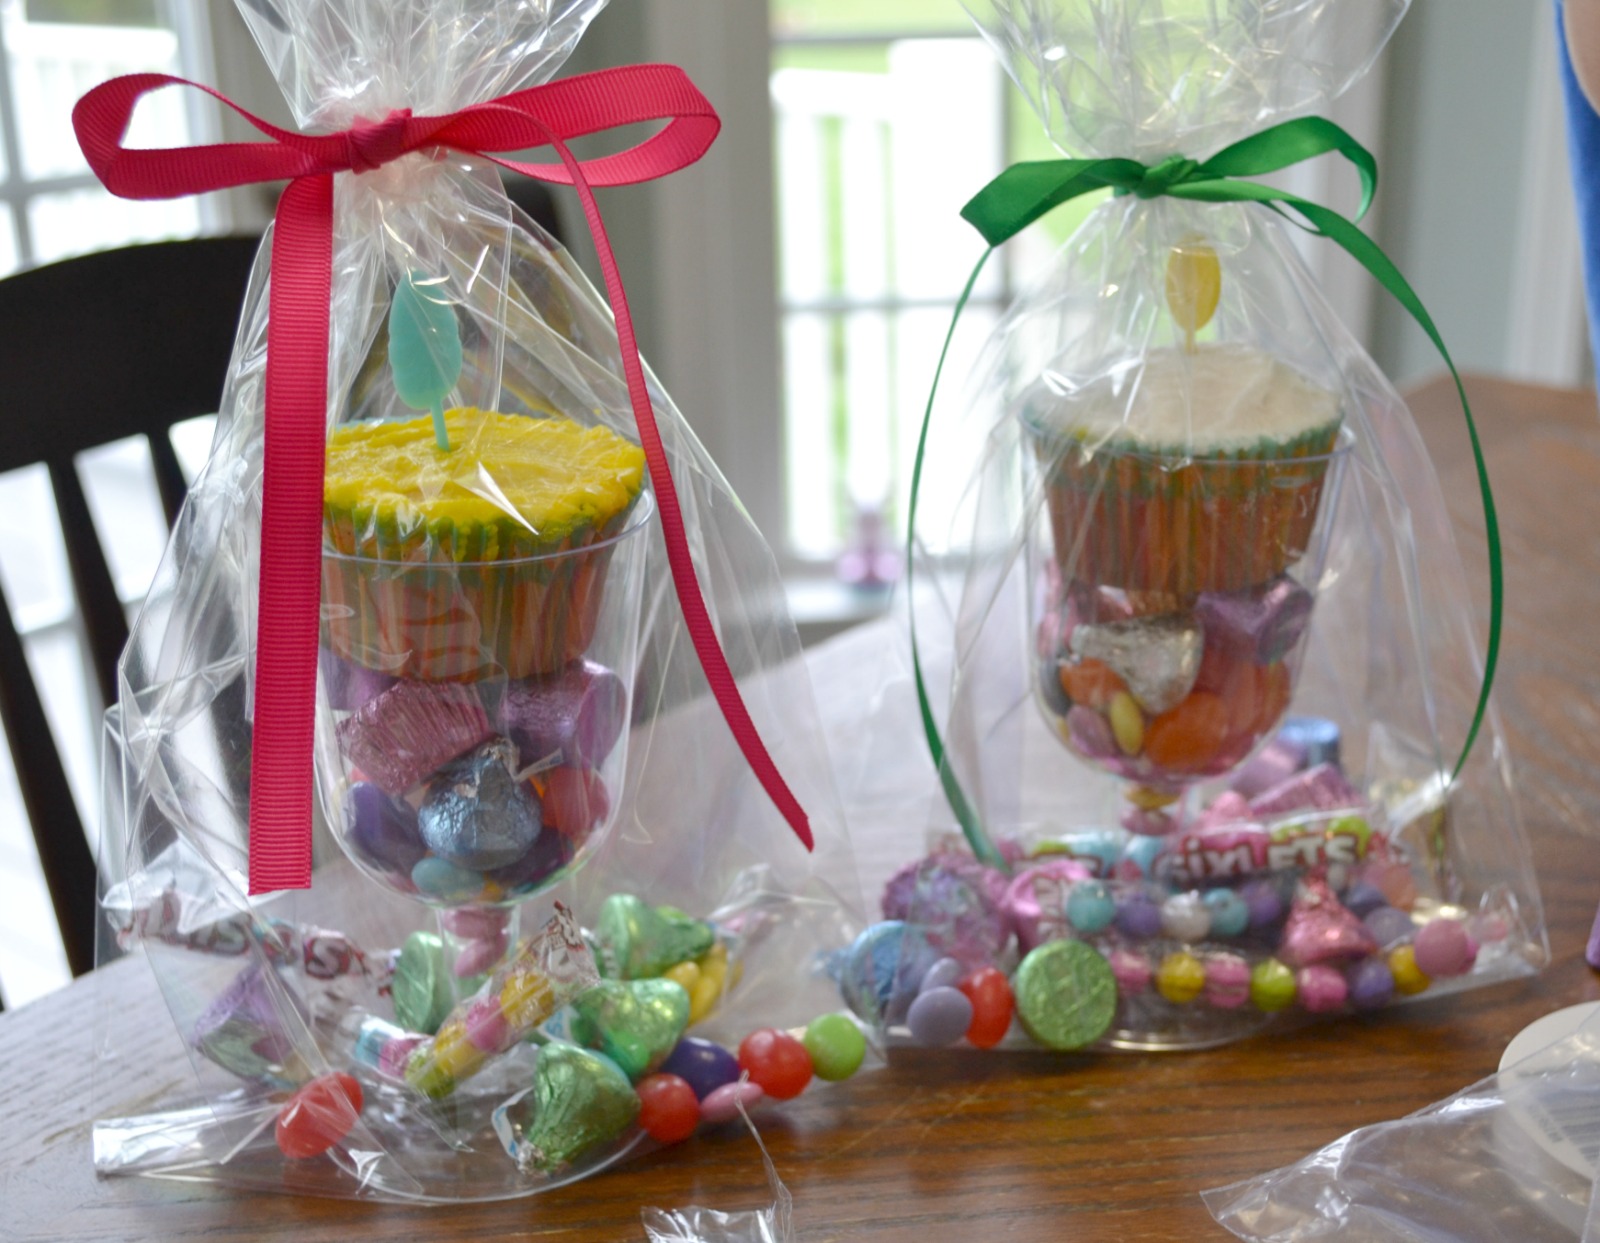 Easter treats for your children or grandchildren.